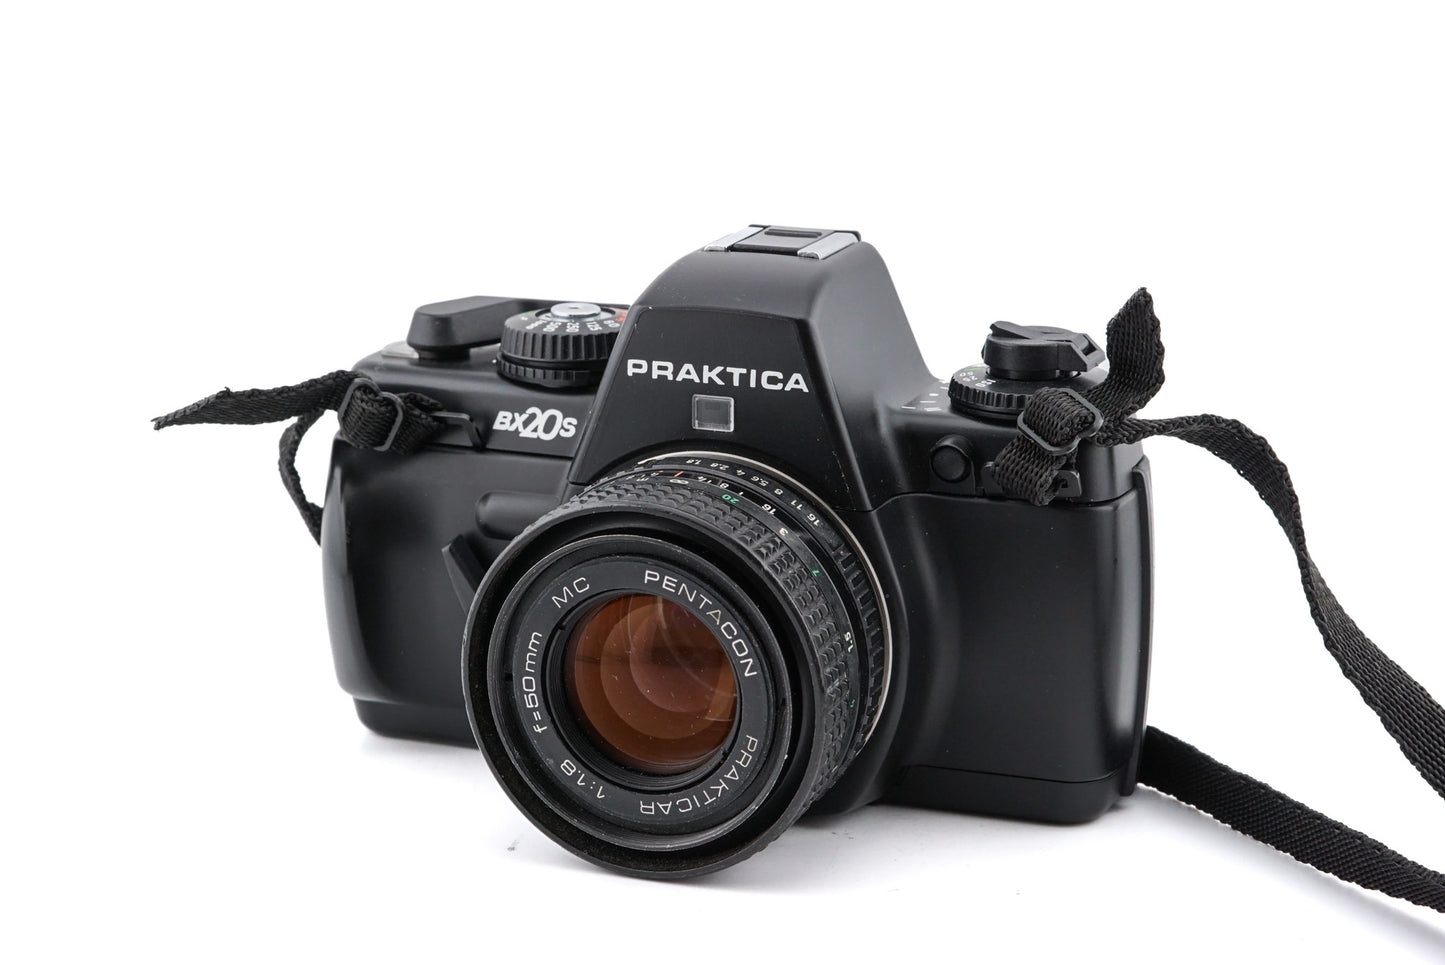 Praktica BX20s - Camera